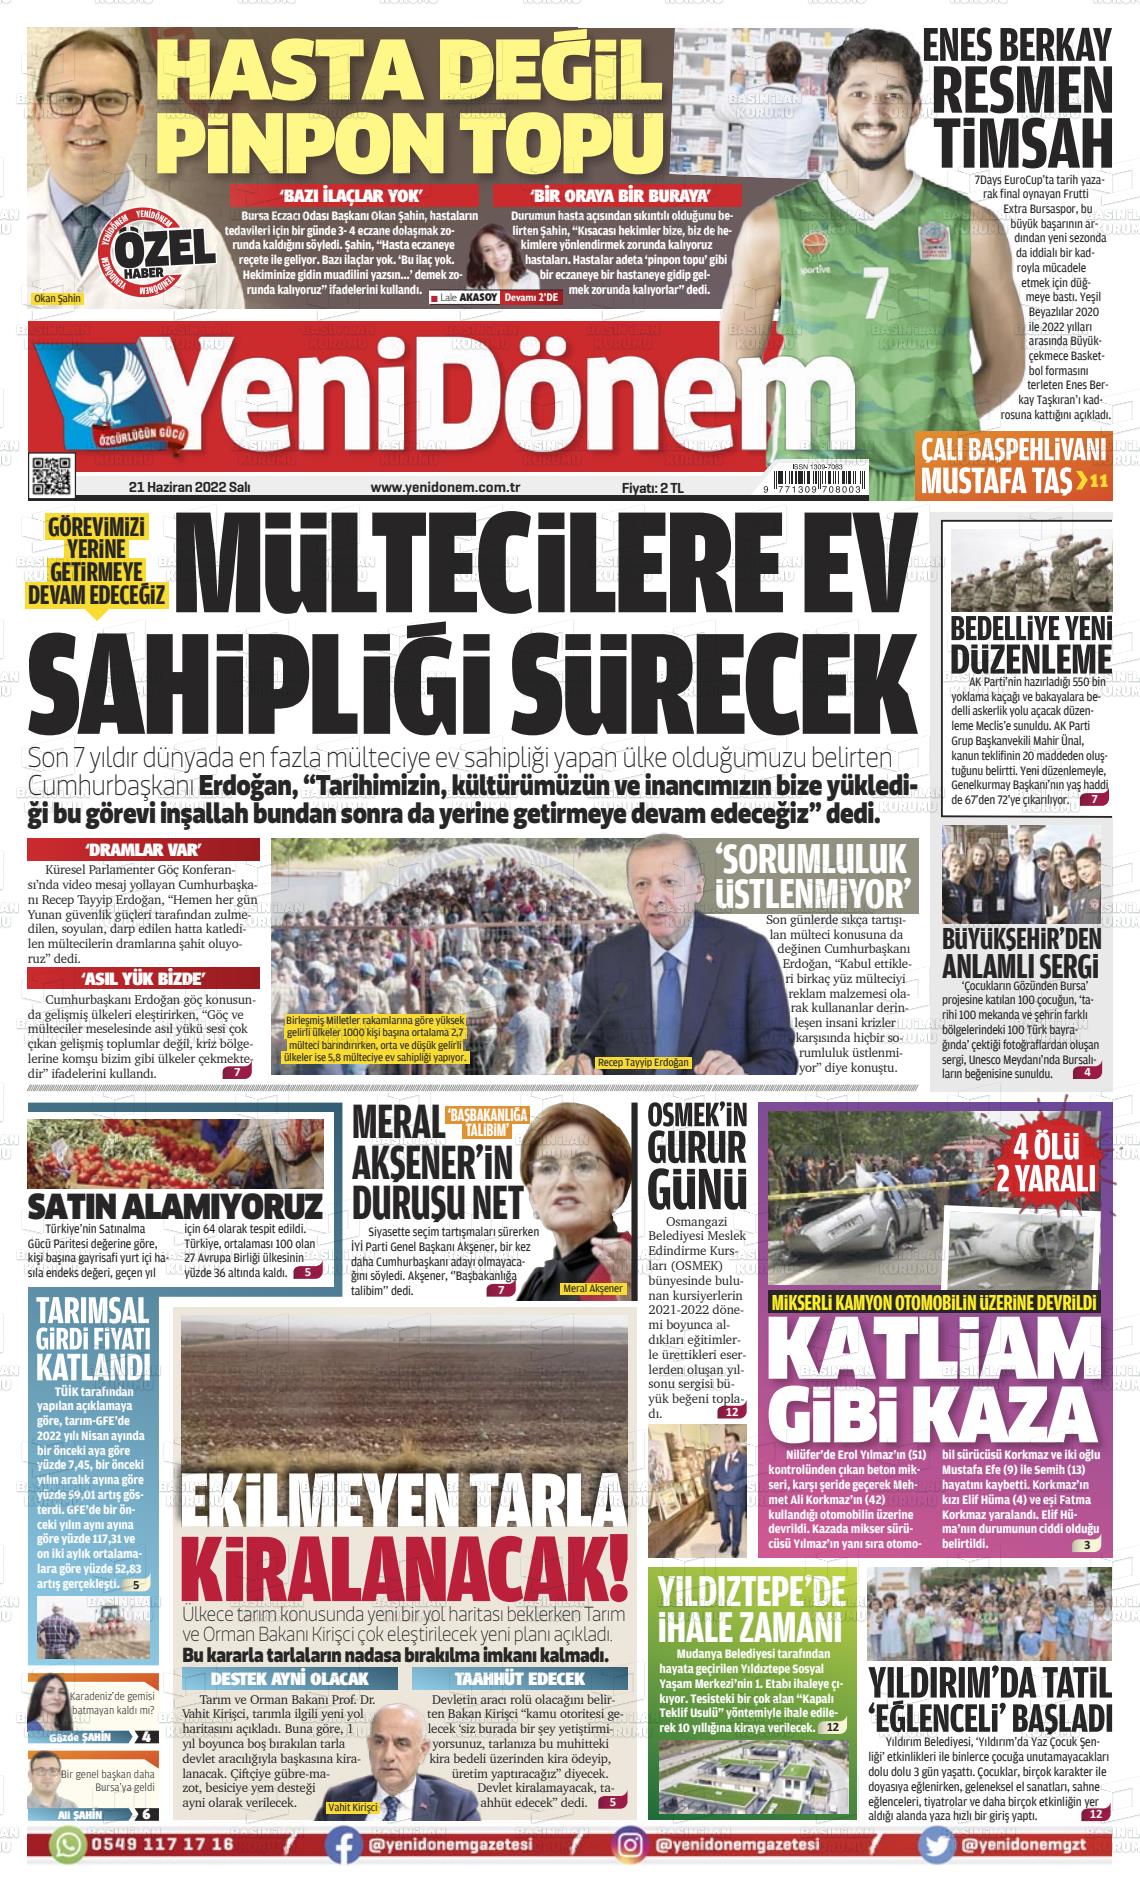 21 Haziran 2022 Yeni Dönem Gazete Manşeti